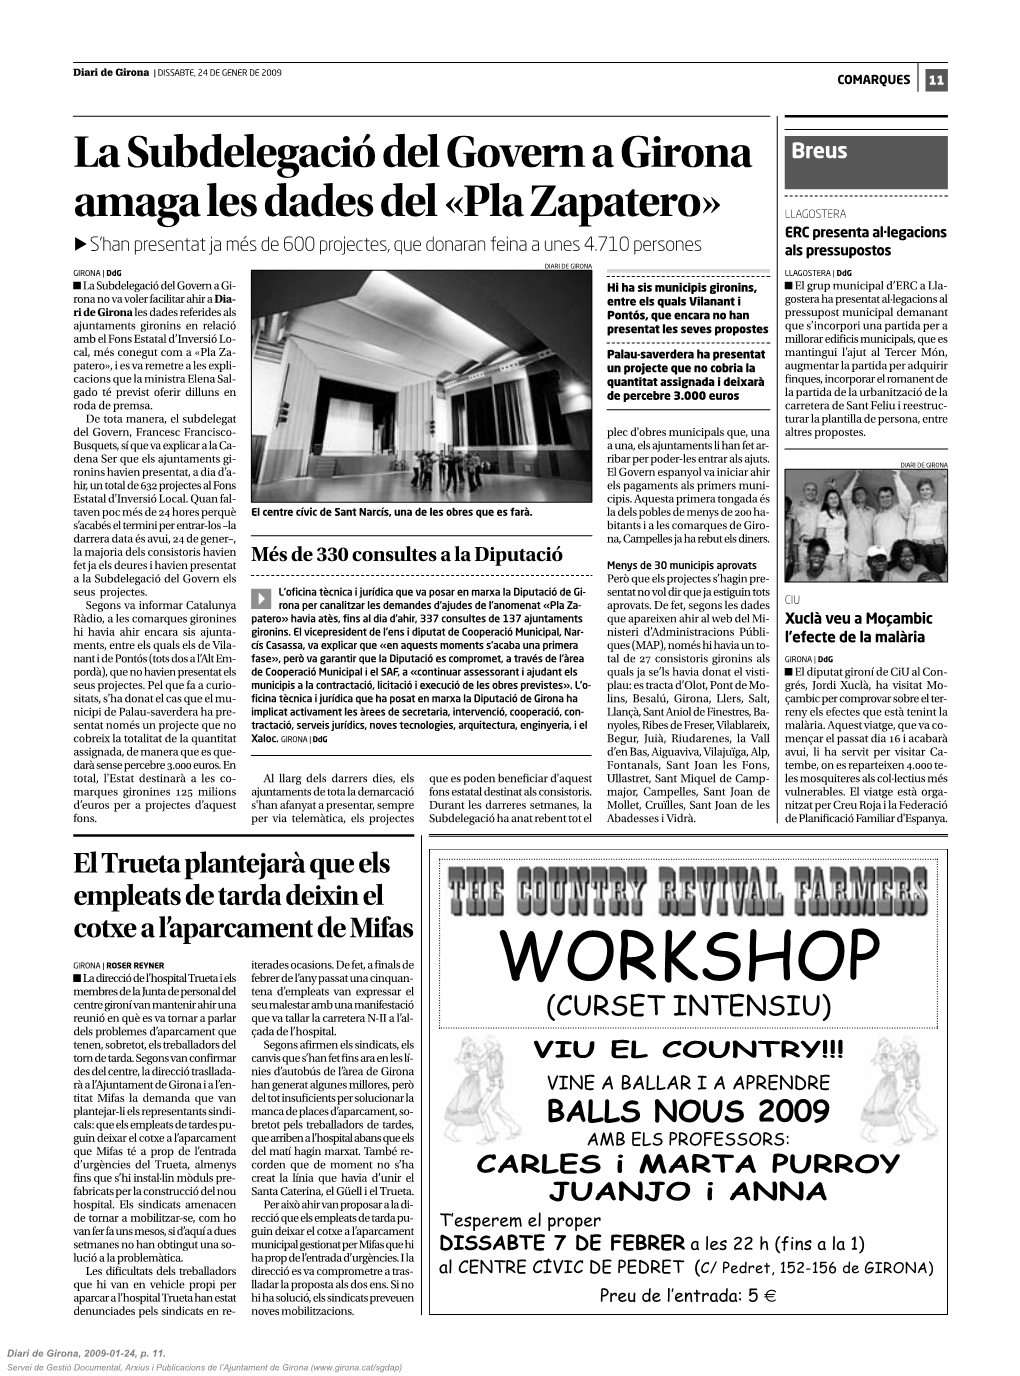 La Subdelegació Del Govern a Girona Amaga Les Dades Del «Pla Zapatero